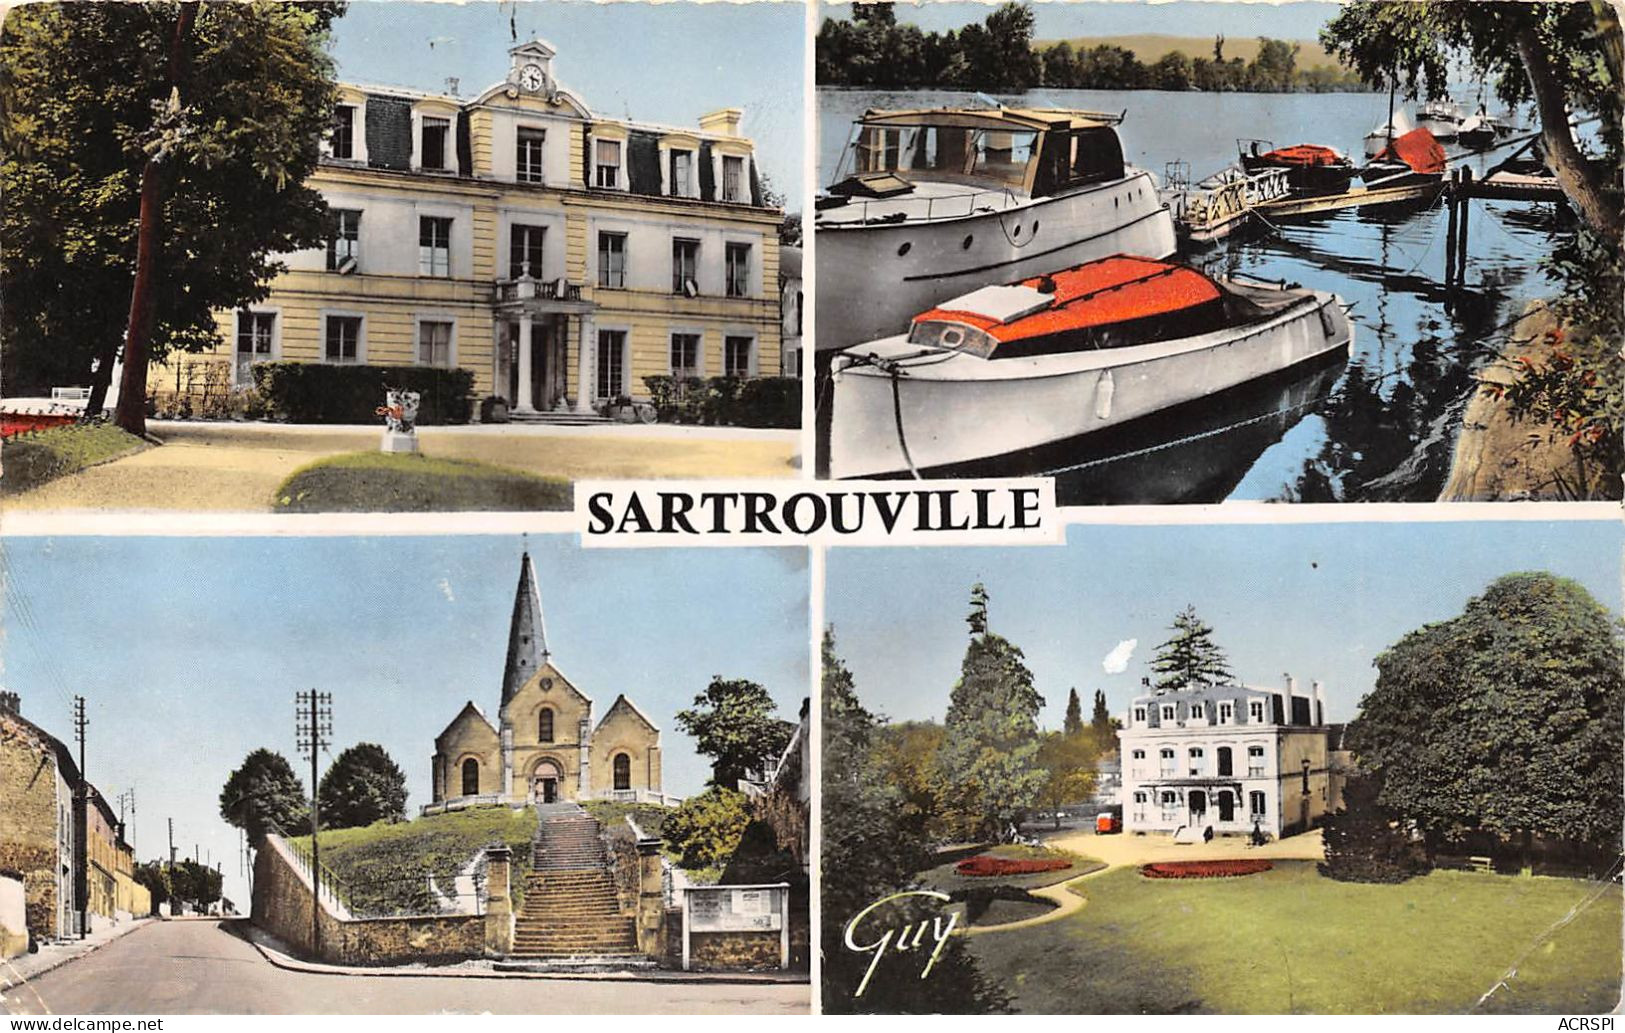 SARTROUVILLE L HOTEL De Ville Bords De Seine L Eglise Et Le Dispensaire 1(scan Recto-verso) MA680 - Sartrouville